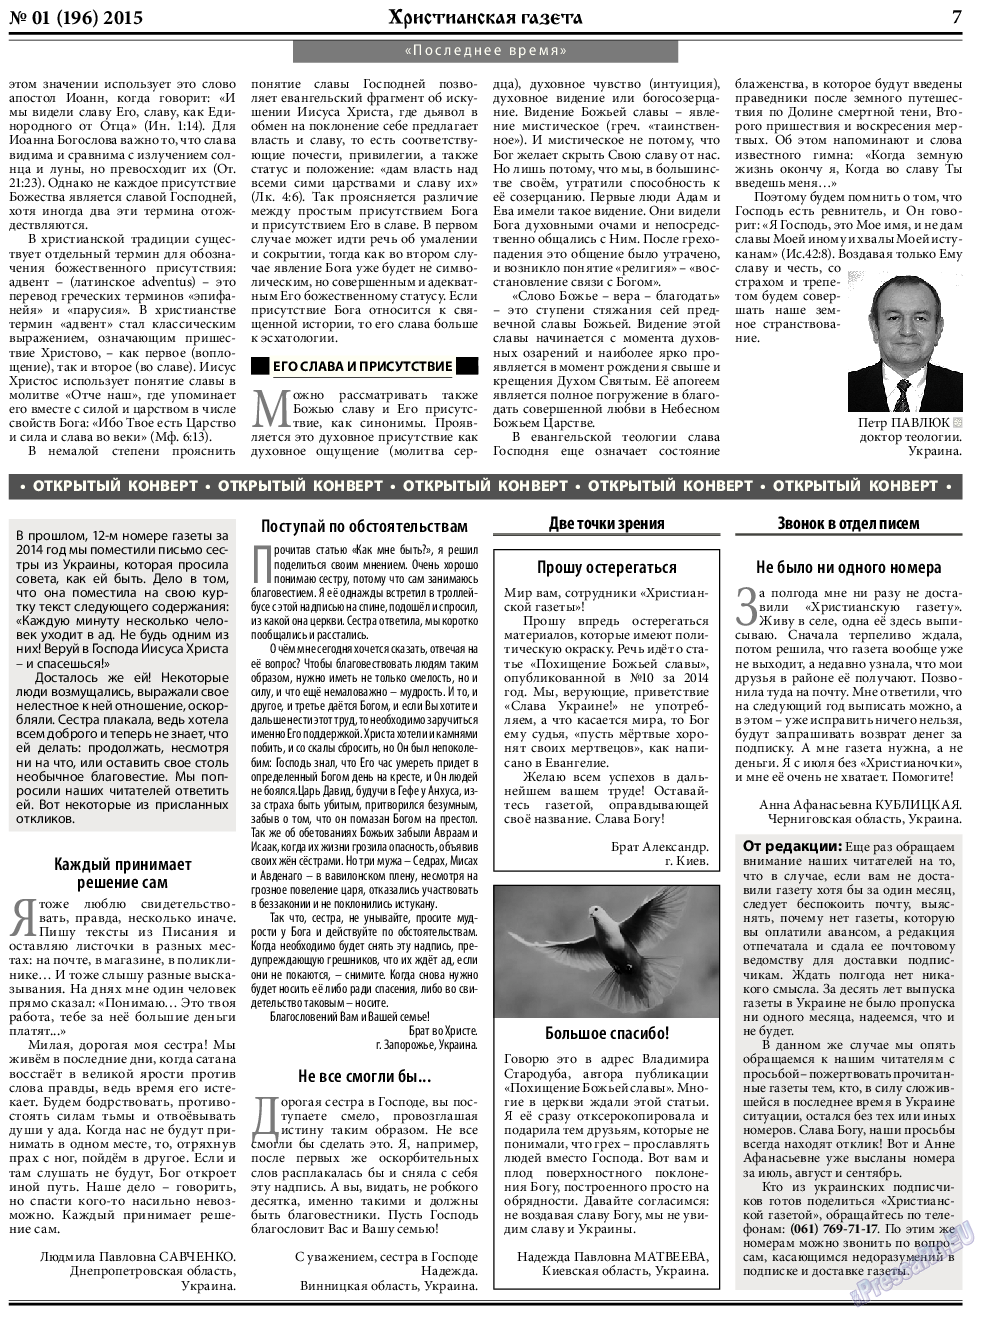 Христианская газета, газета. 2015 №1 стр.7